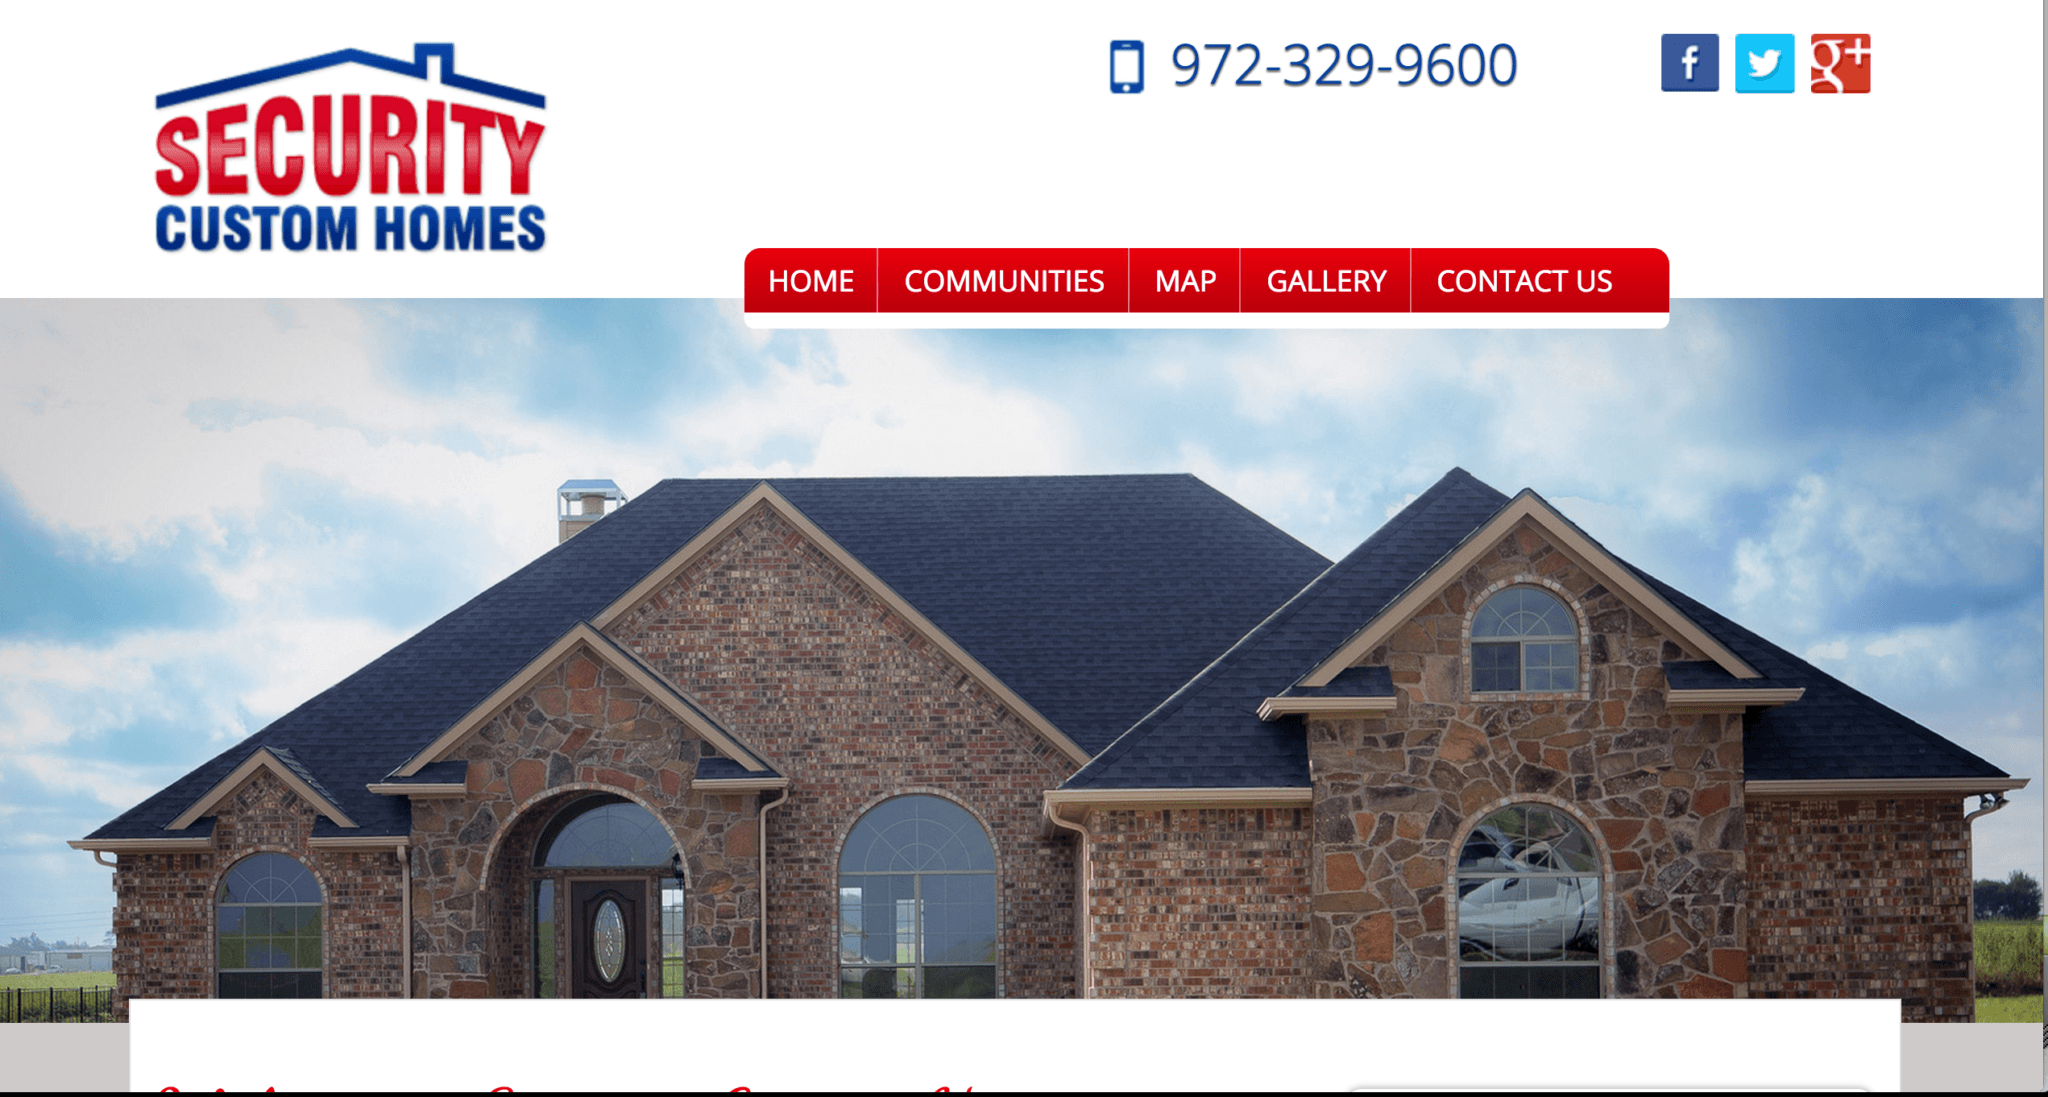 Security Custom Homes – New Website, Frisco, TX